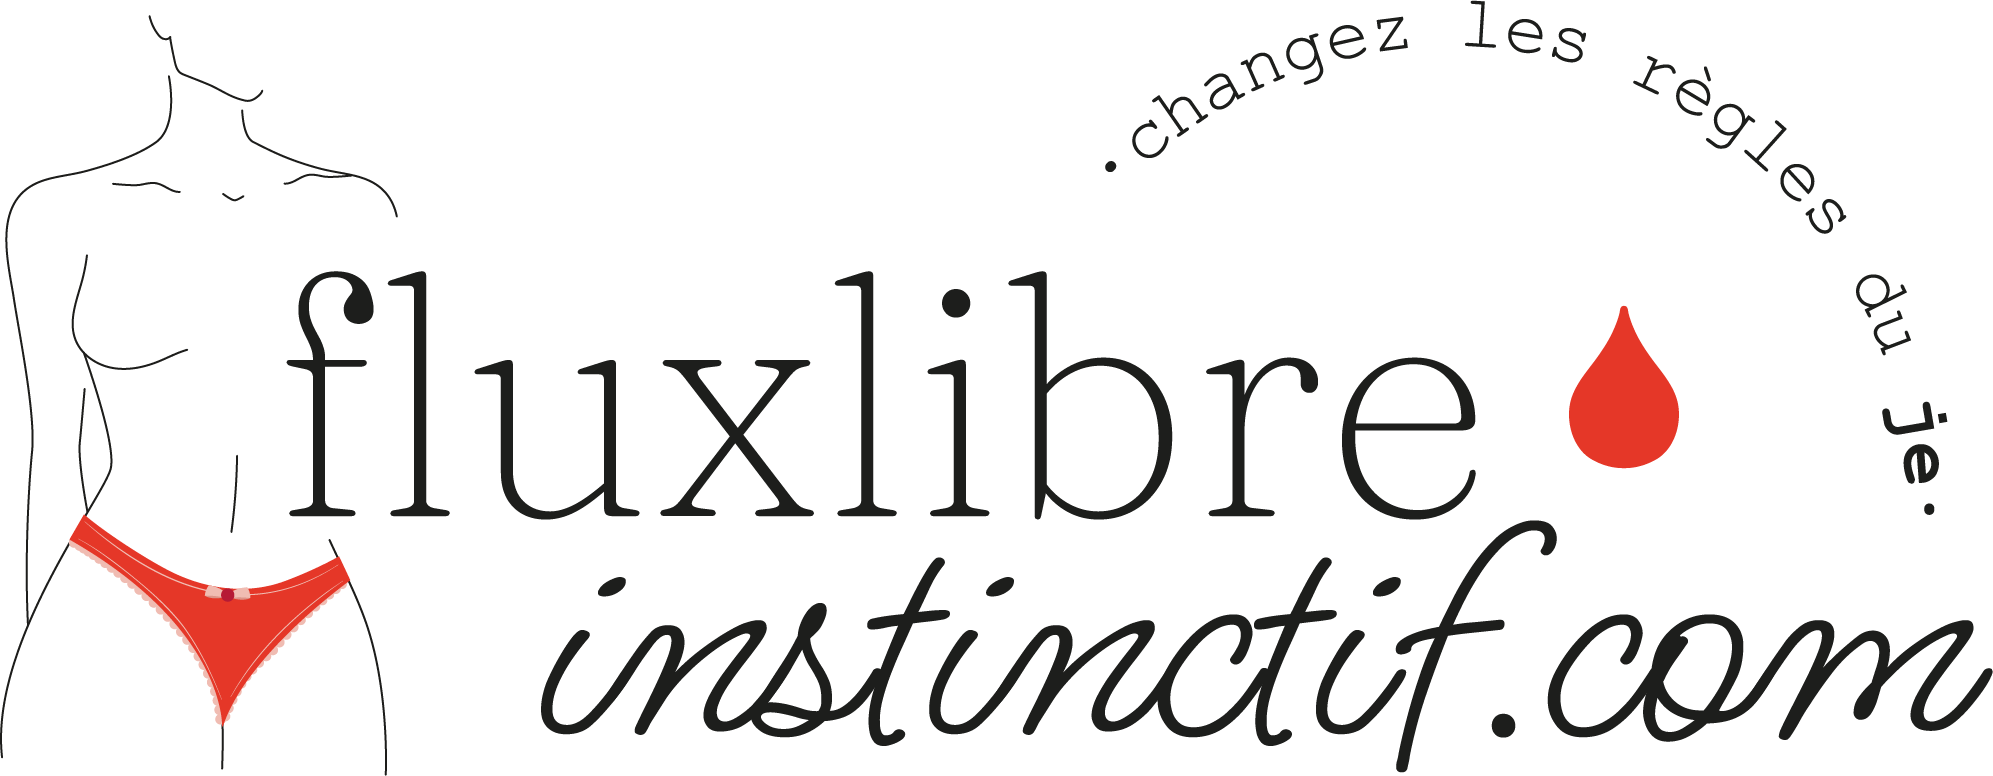 Logo flux libre instinctif